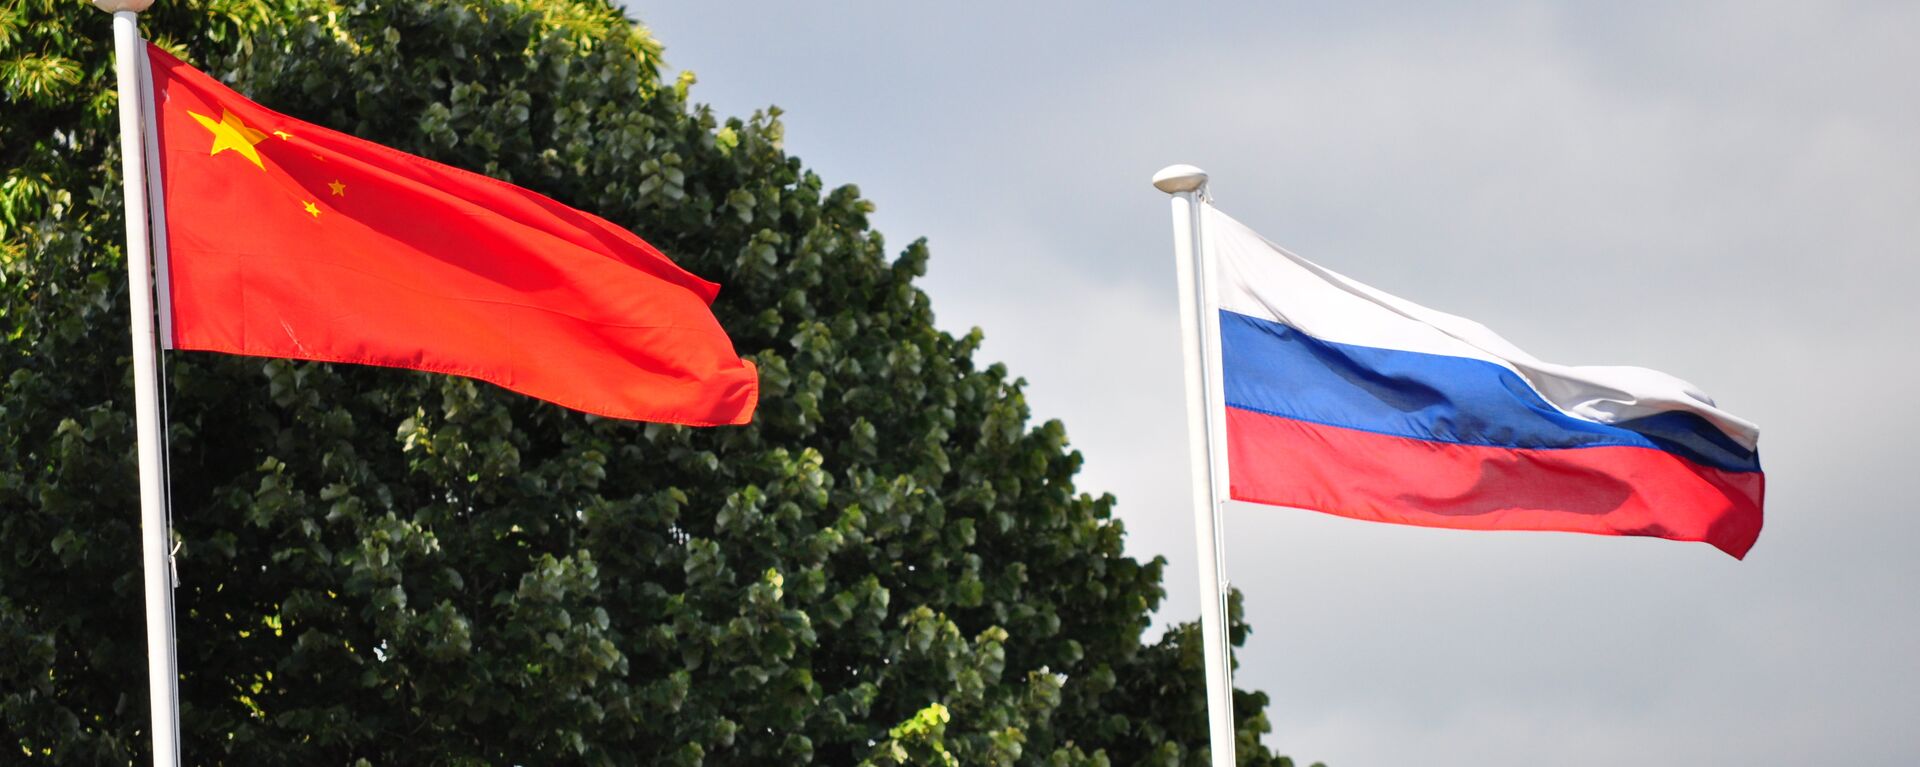 Zastave Rusije i Kine - Sputnik Srbija, 1920, 27.11.2021